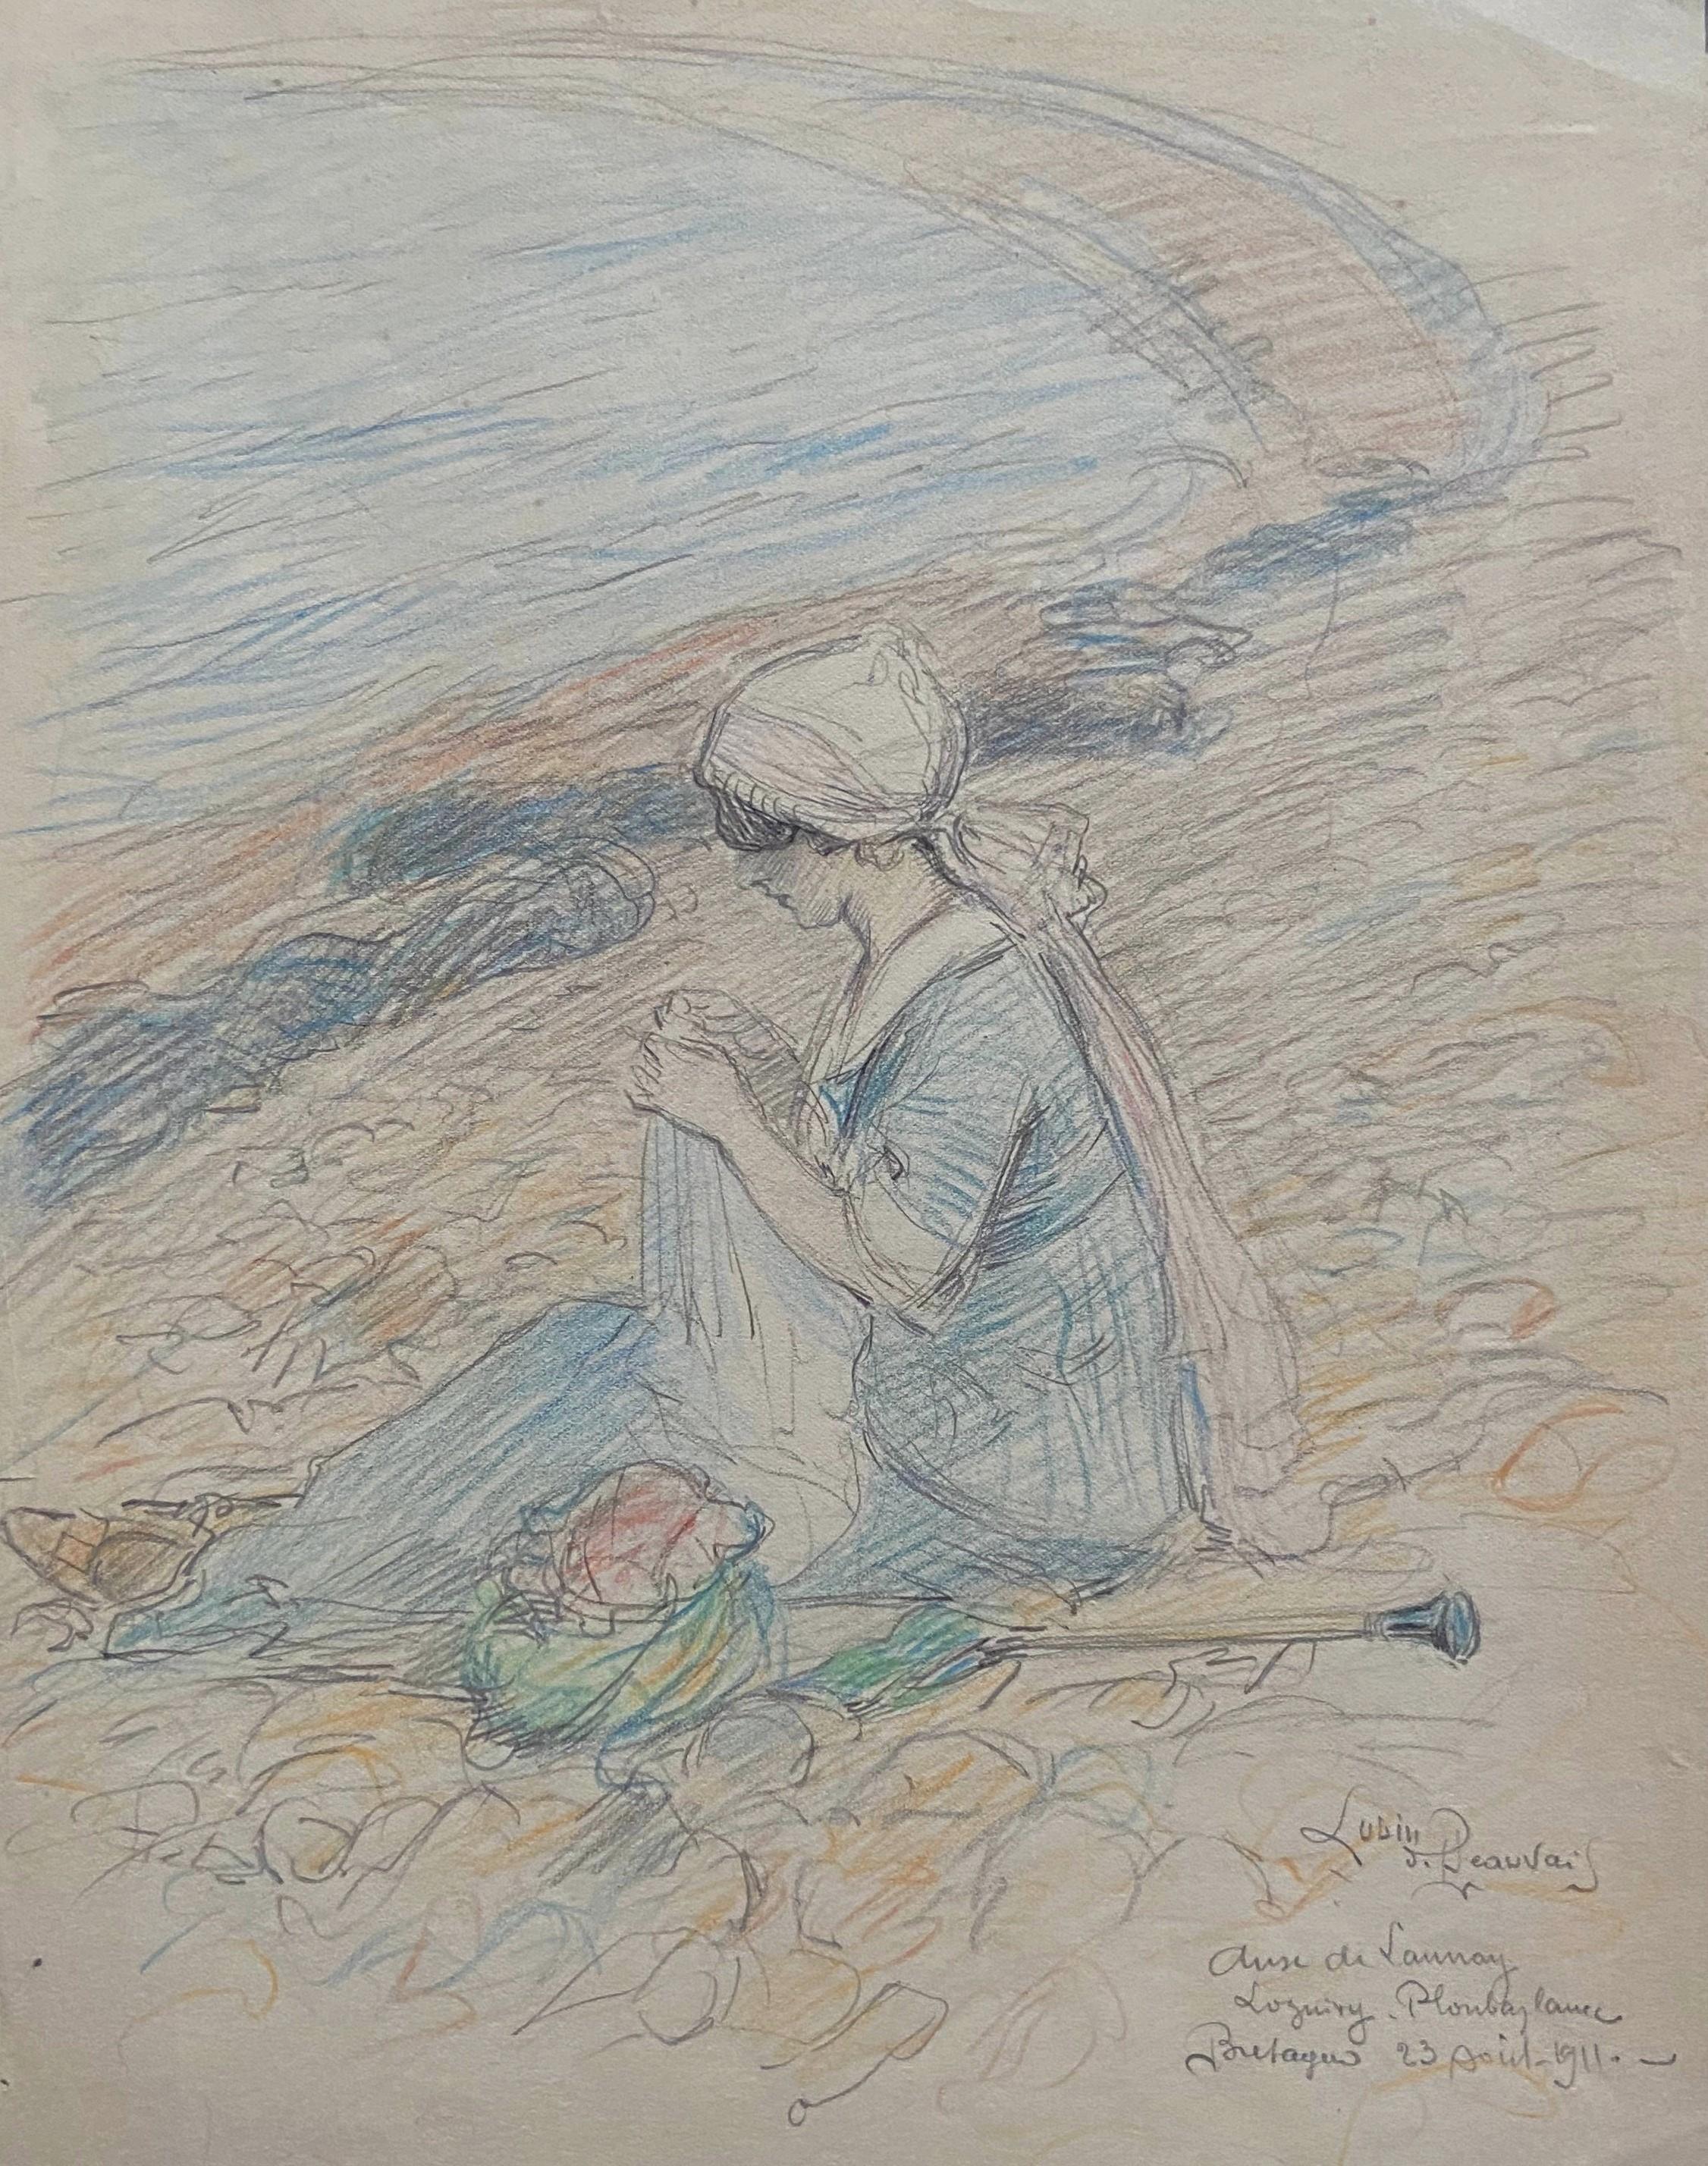 Lubin de Beauvais (1873-1917) 
L'anse de Launay, eine Frau am Strand, 1911
signiert, datiert und betitelt "Anse de Launay, Loguivy Ploubazlanec, Bretagne, 23 août 1911" unten links
Buntstifte auf Papier
33,3 x 23,3 cm
In gutem Zustand 
In einem